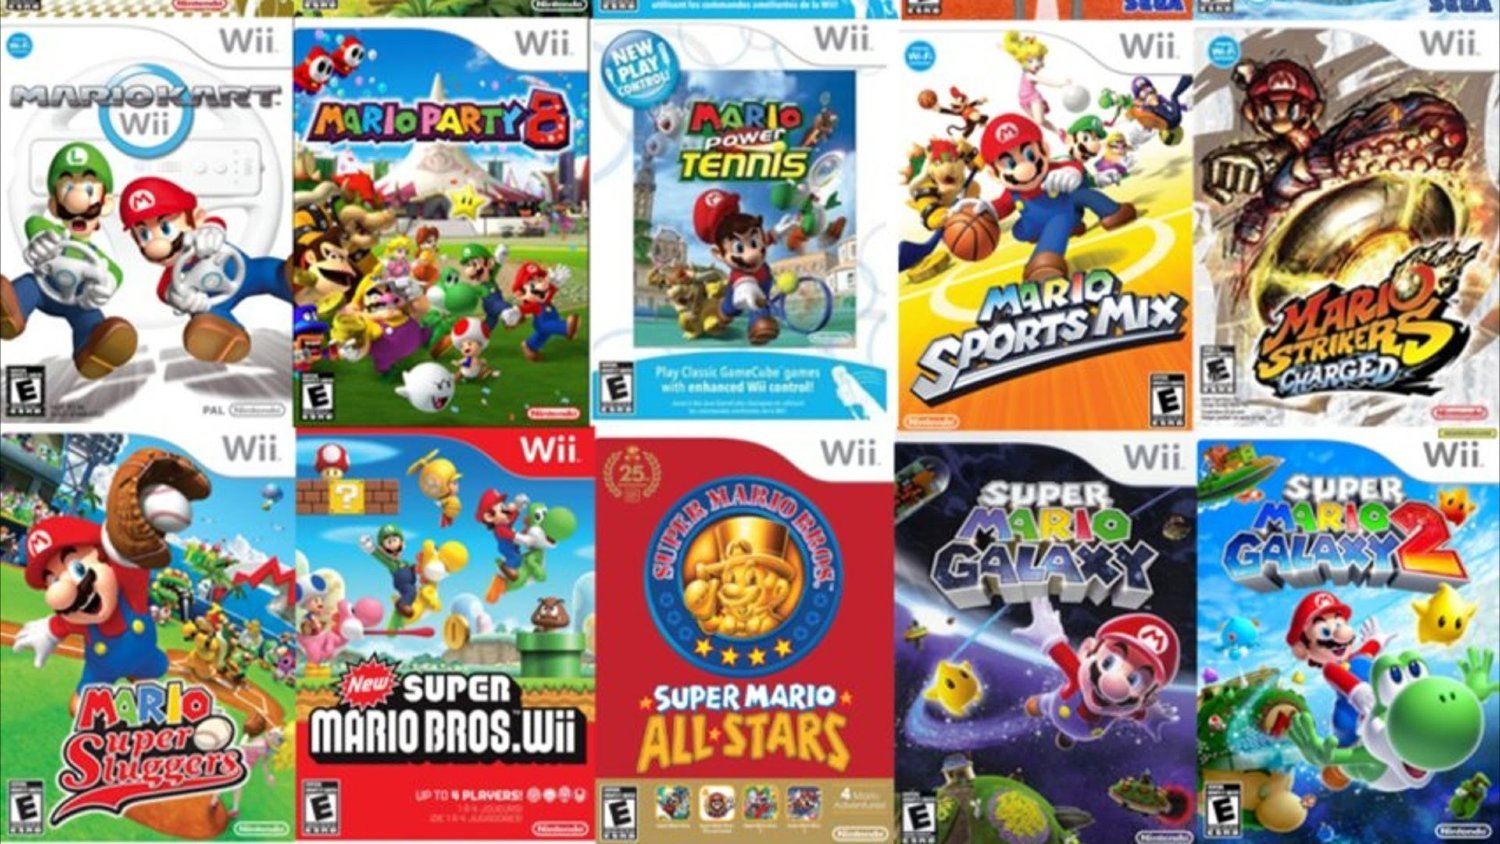 Download wii games. Wii игры. Нинтендо Wii игры. Марио игра на Wii. Nintendo Wii диски.